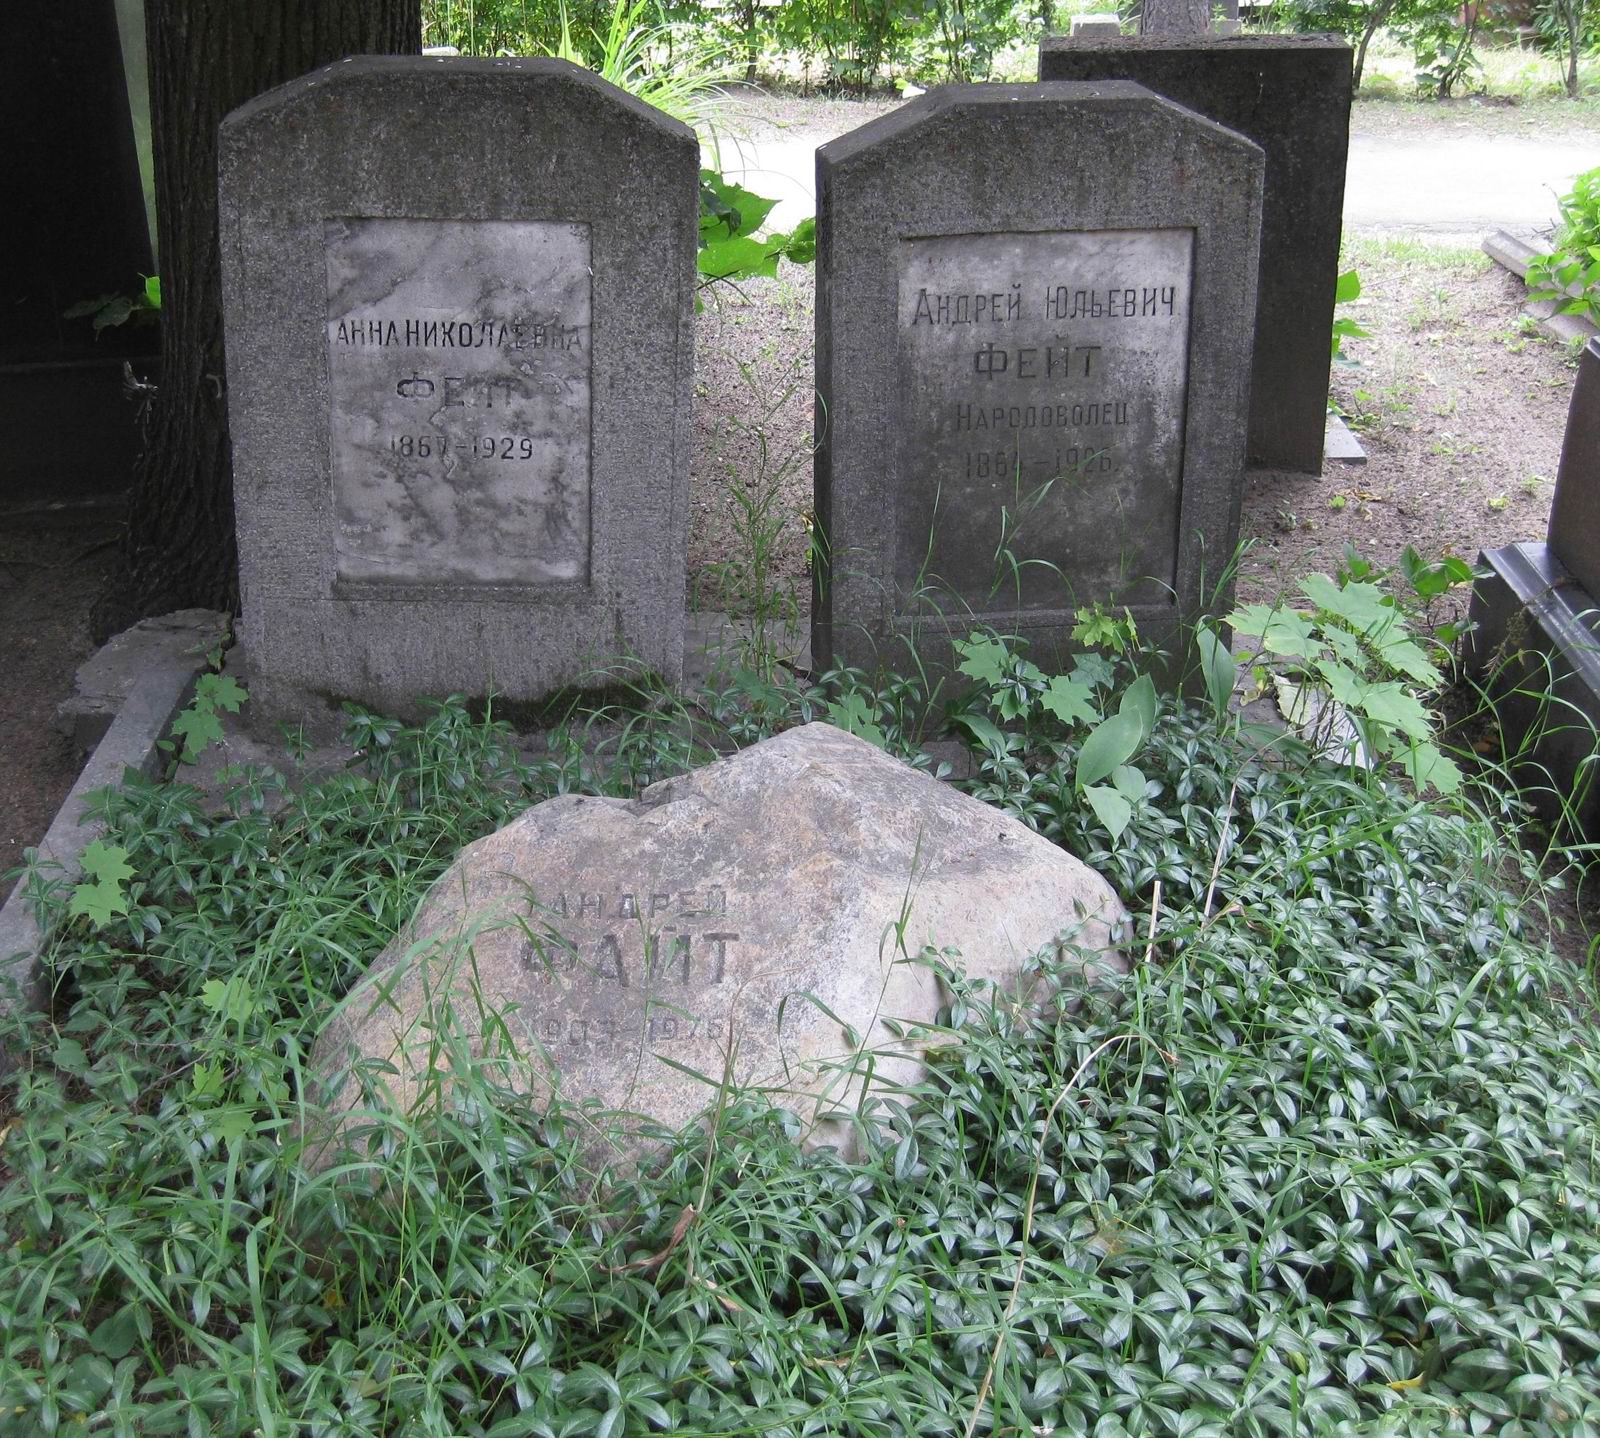 Памятник на могиле Фейта А.Ю. (1864-1926), на Новодевичьем кладбище (1-45-52). Нажмите левую кнопку мыши, чтобы увидеть фрагмент памятника.